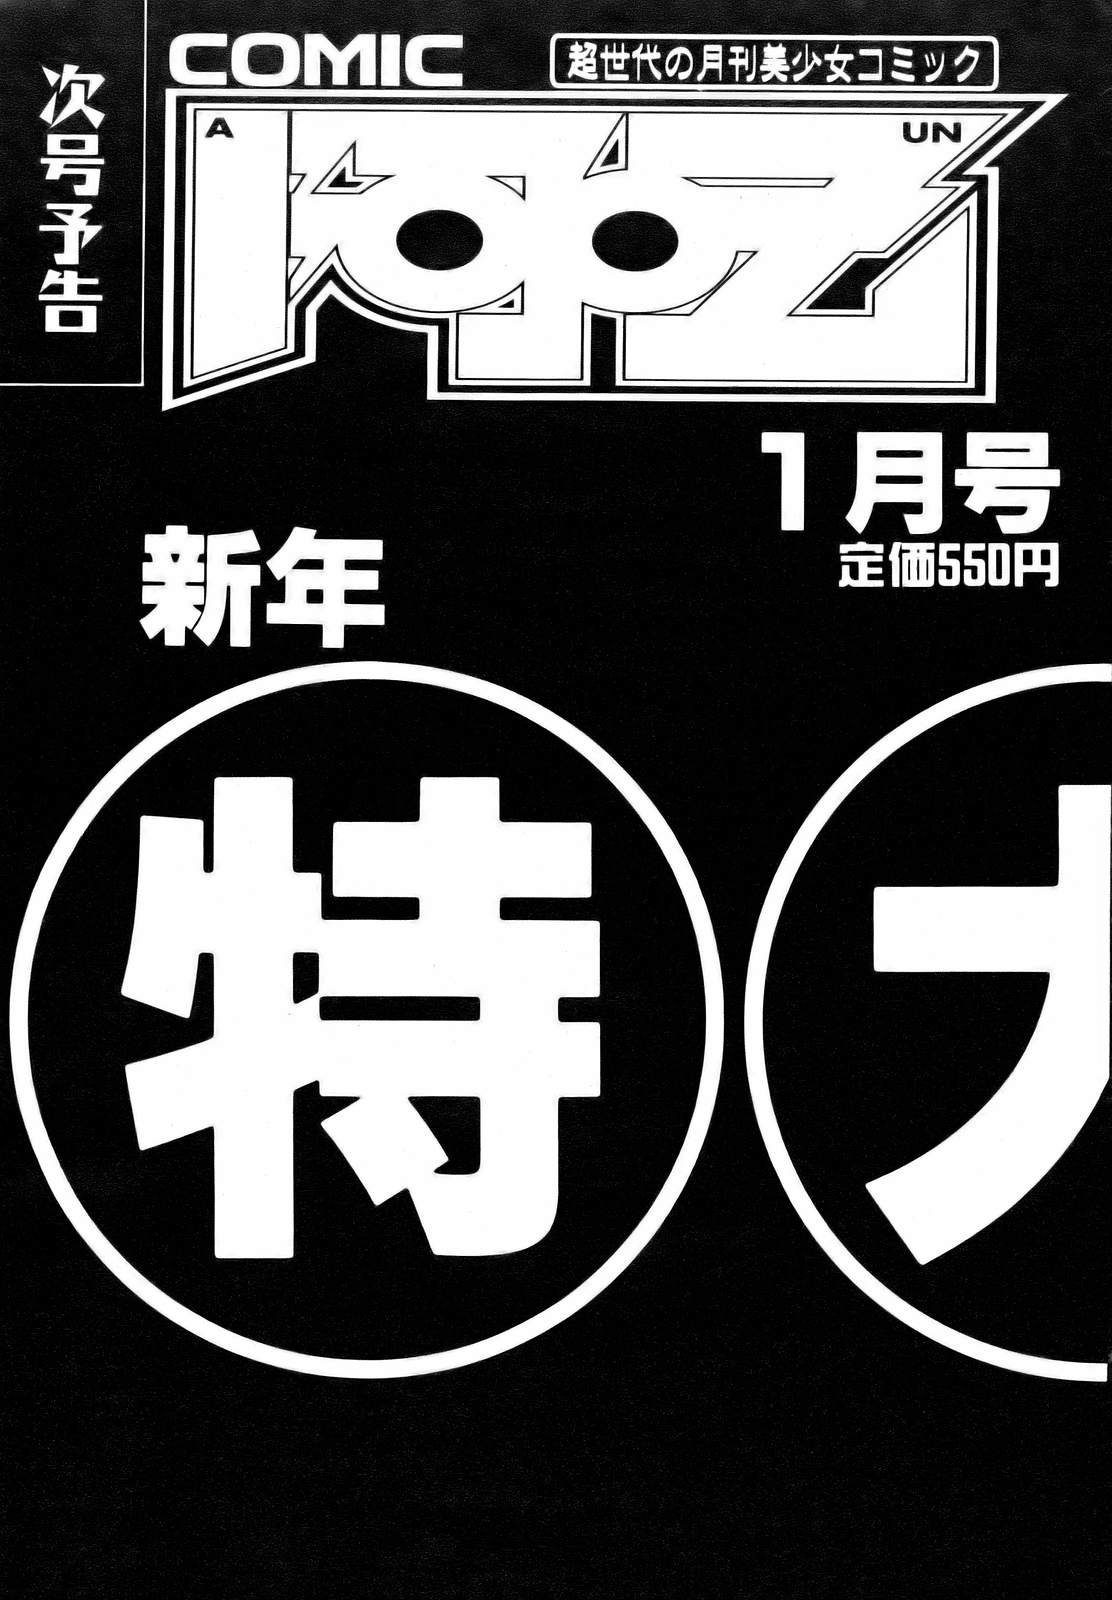 COMIC AUN 2006-12 Vol. 127 COMIC 阿吽 2006年12月号 VOL.127